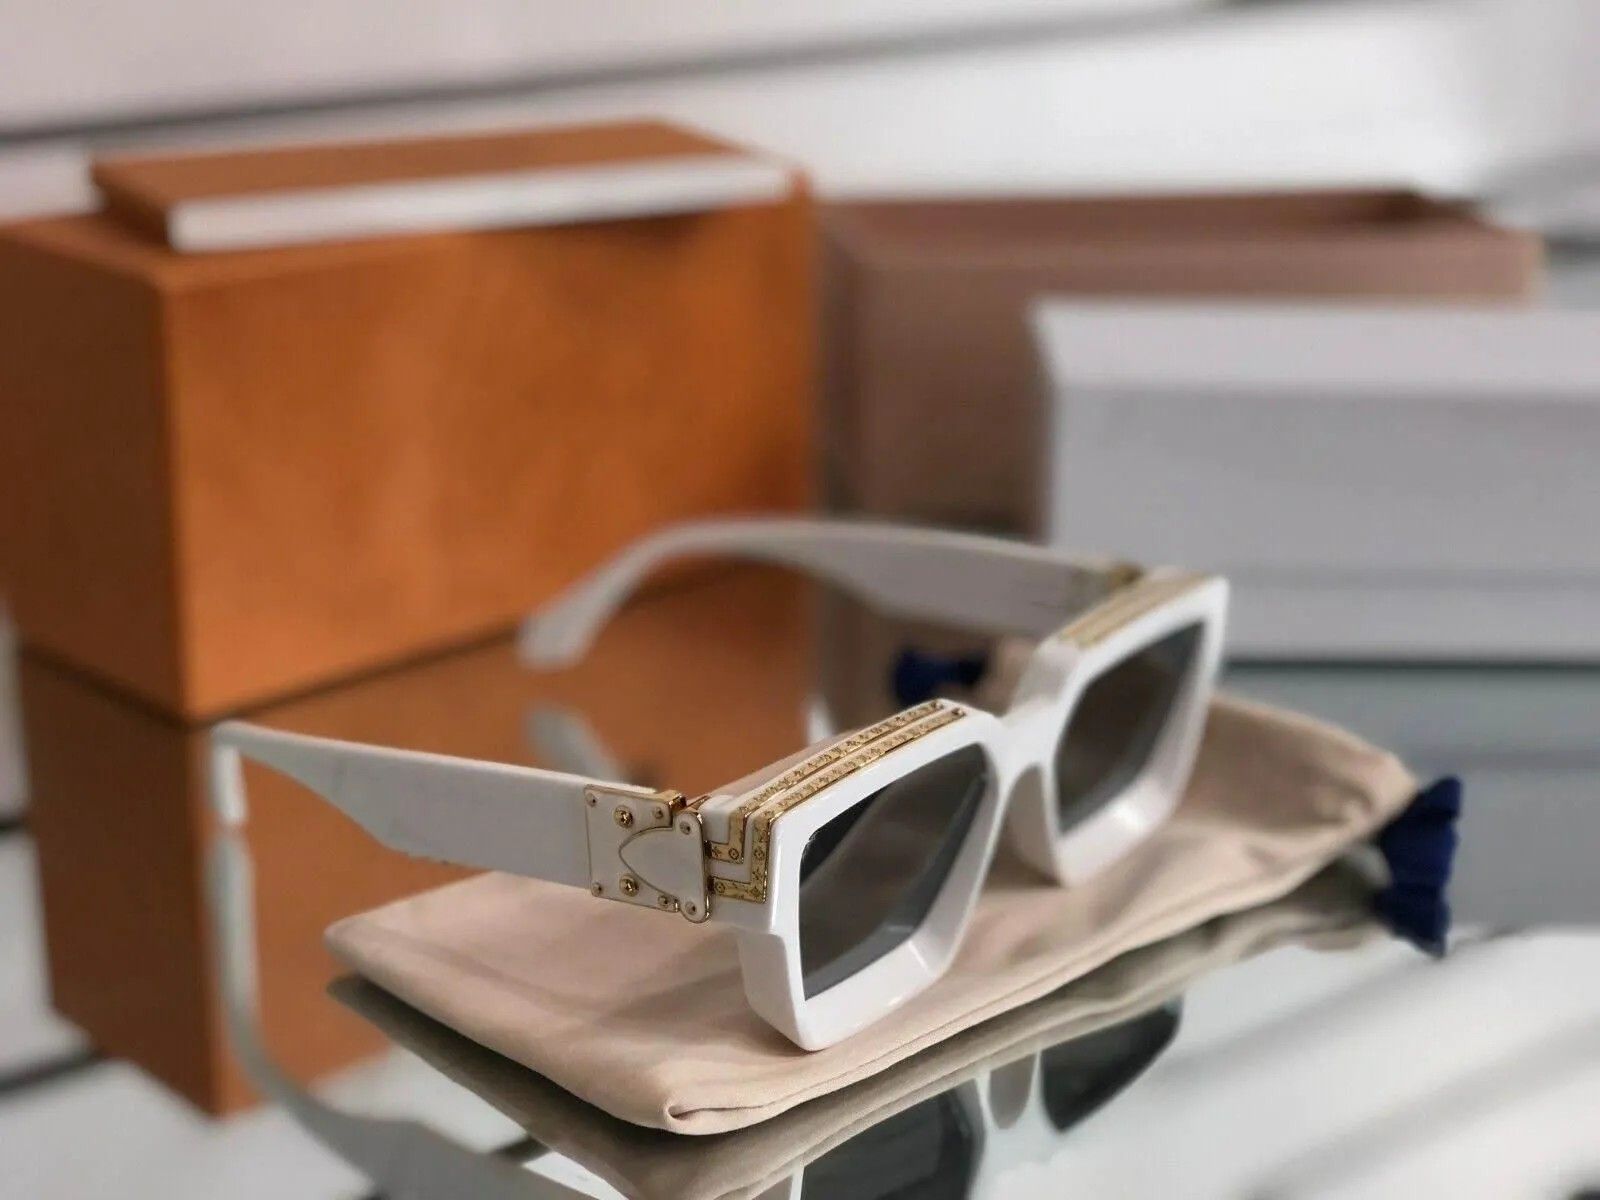 Luxury Vintage Designer Villain Sunglasses For Men And Women Full